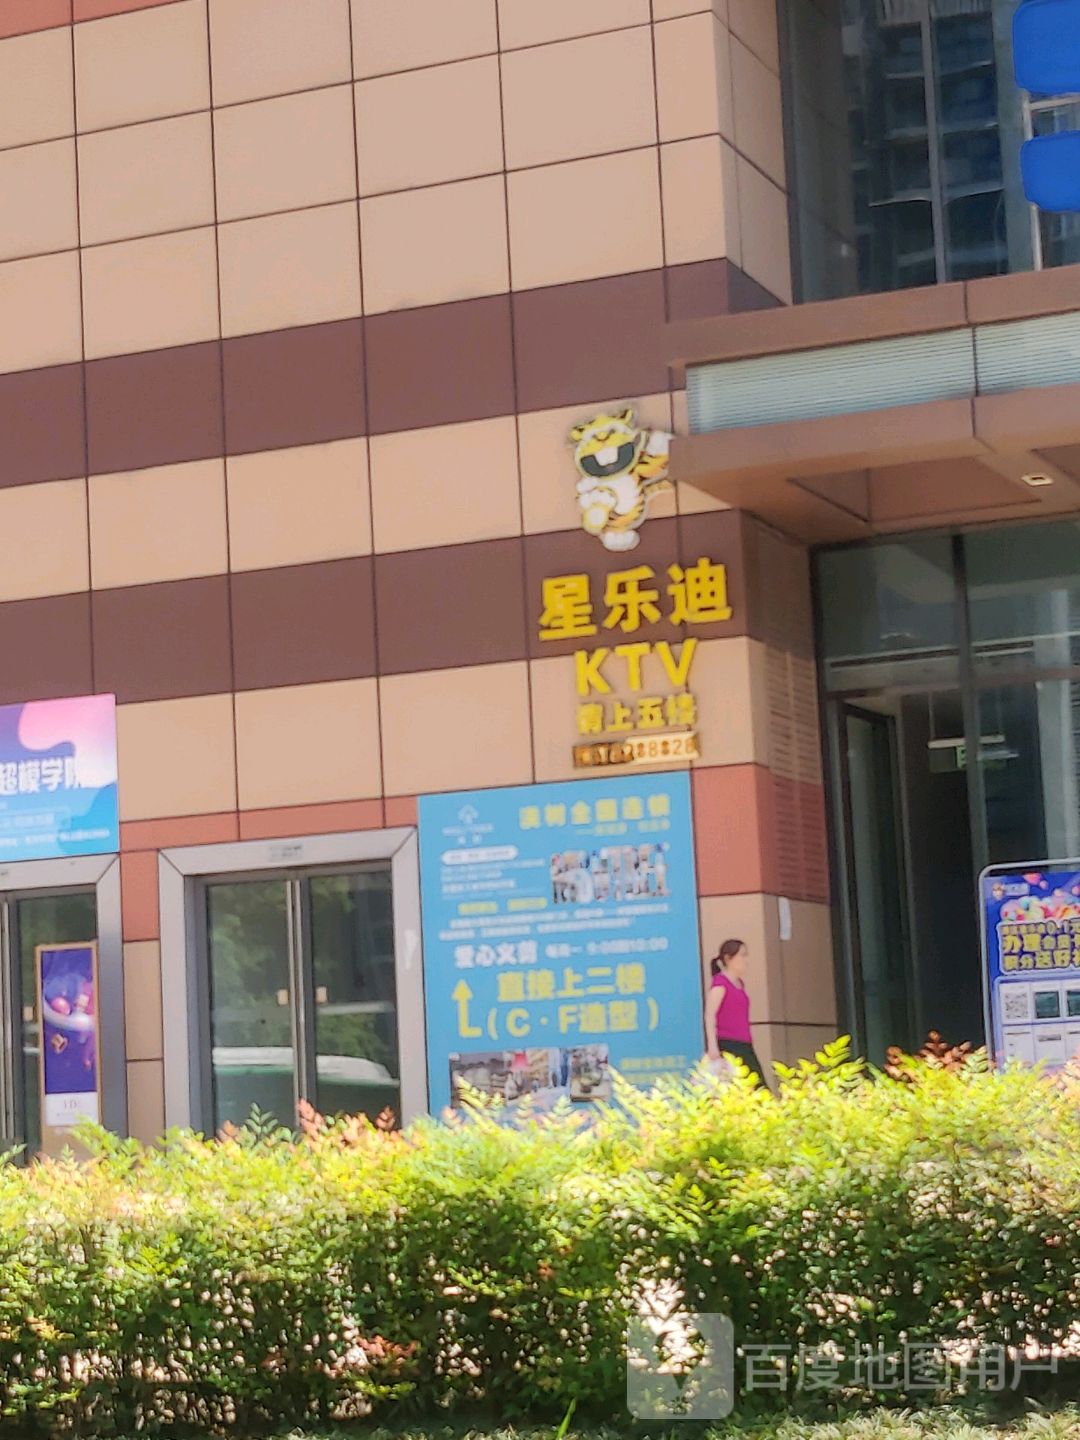 星乐迪KTV(东方时代广场分店